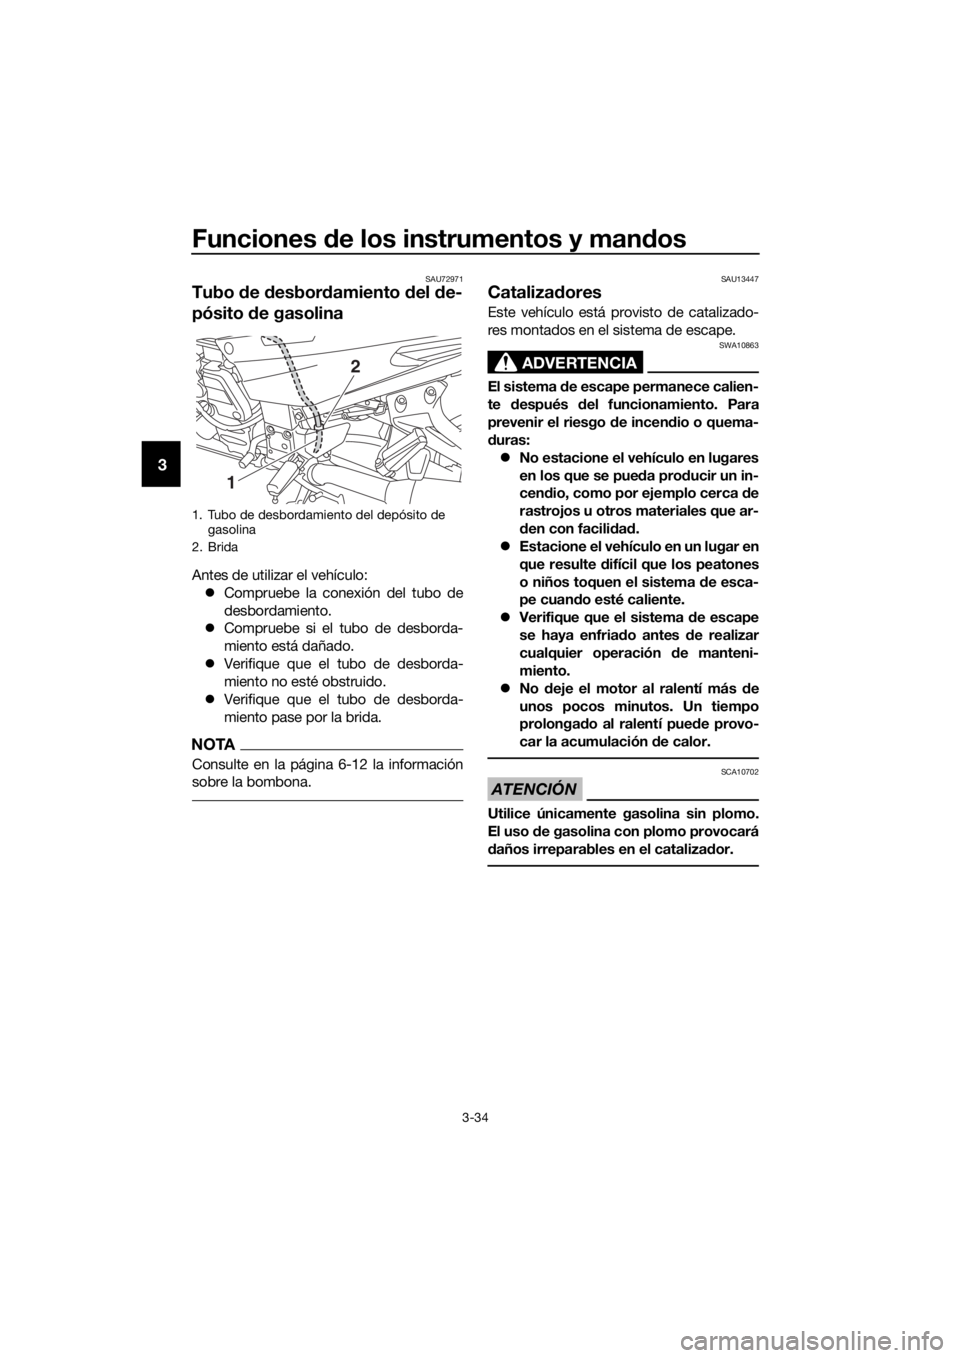 YAMAHA FJR1300AS 2018  Manuale de Empleo (in Spanish) Funciones de los instrumentos y man dos
3-34
3
SAU72971
Tubo  de  desbor damiento  del  de-
pósito  de gasolina
Antes de utilizar el vehículo:
 Compruebe la conexión del tubo de
desbordamiento.
